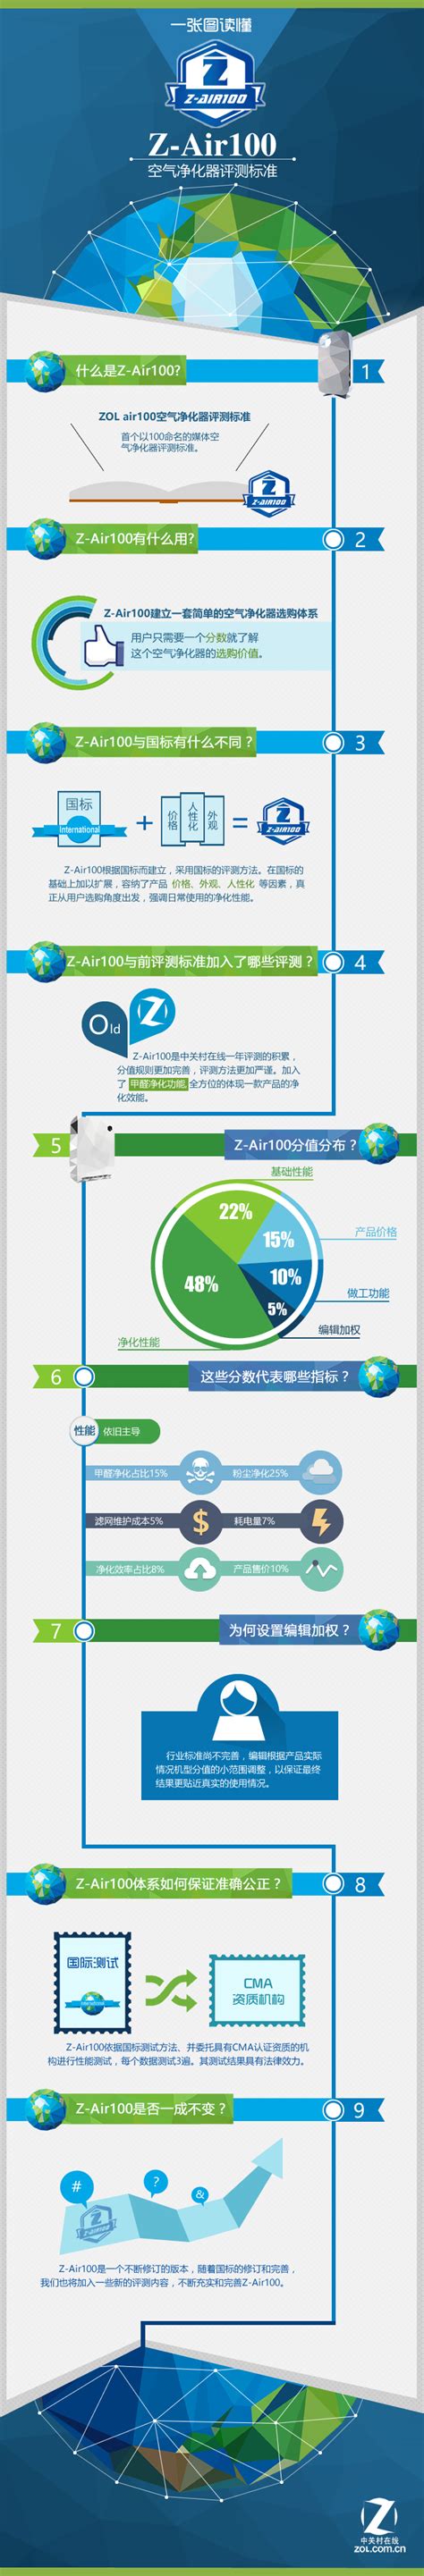 2021年中国及31省市空气净化器行业政策解读 - OFweek智能家居网